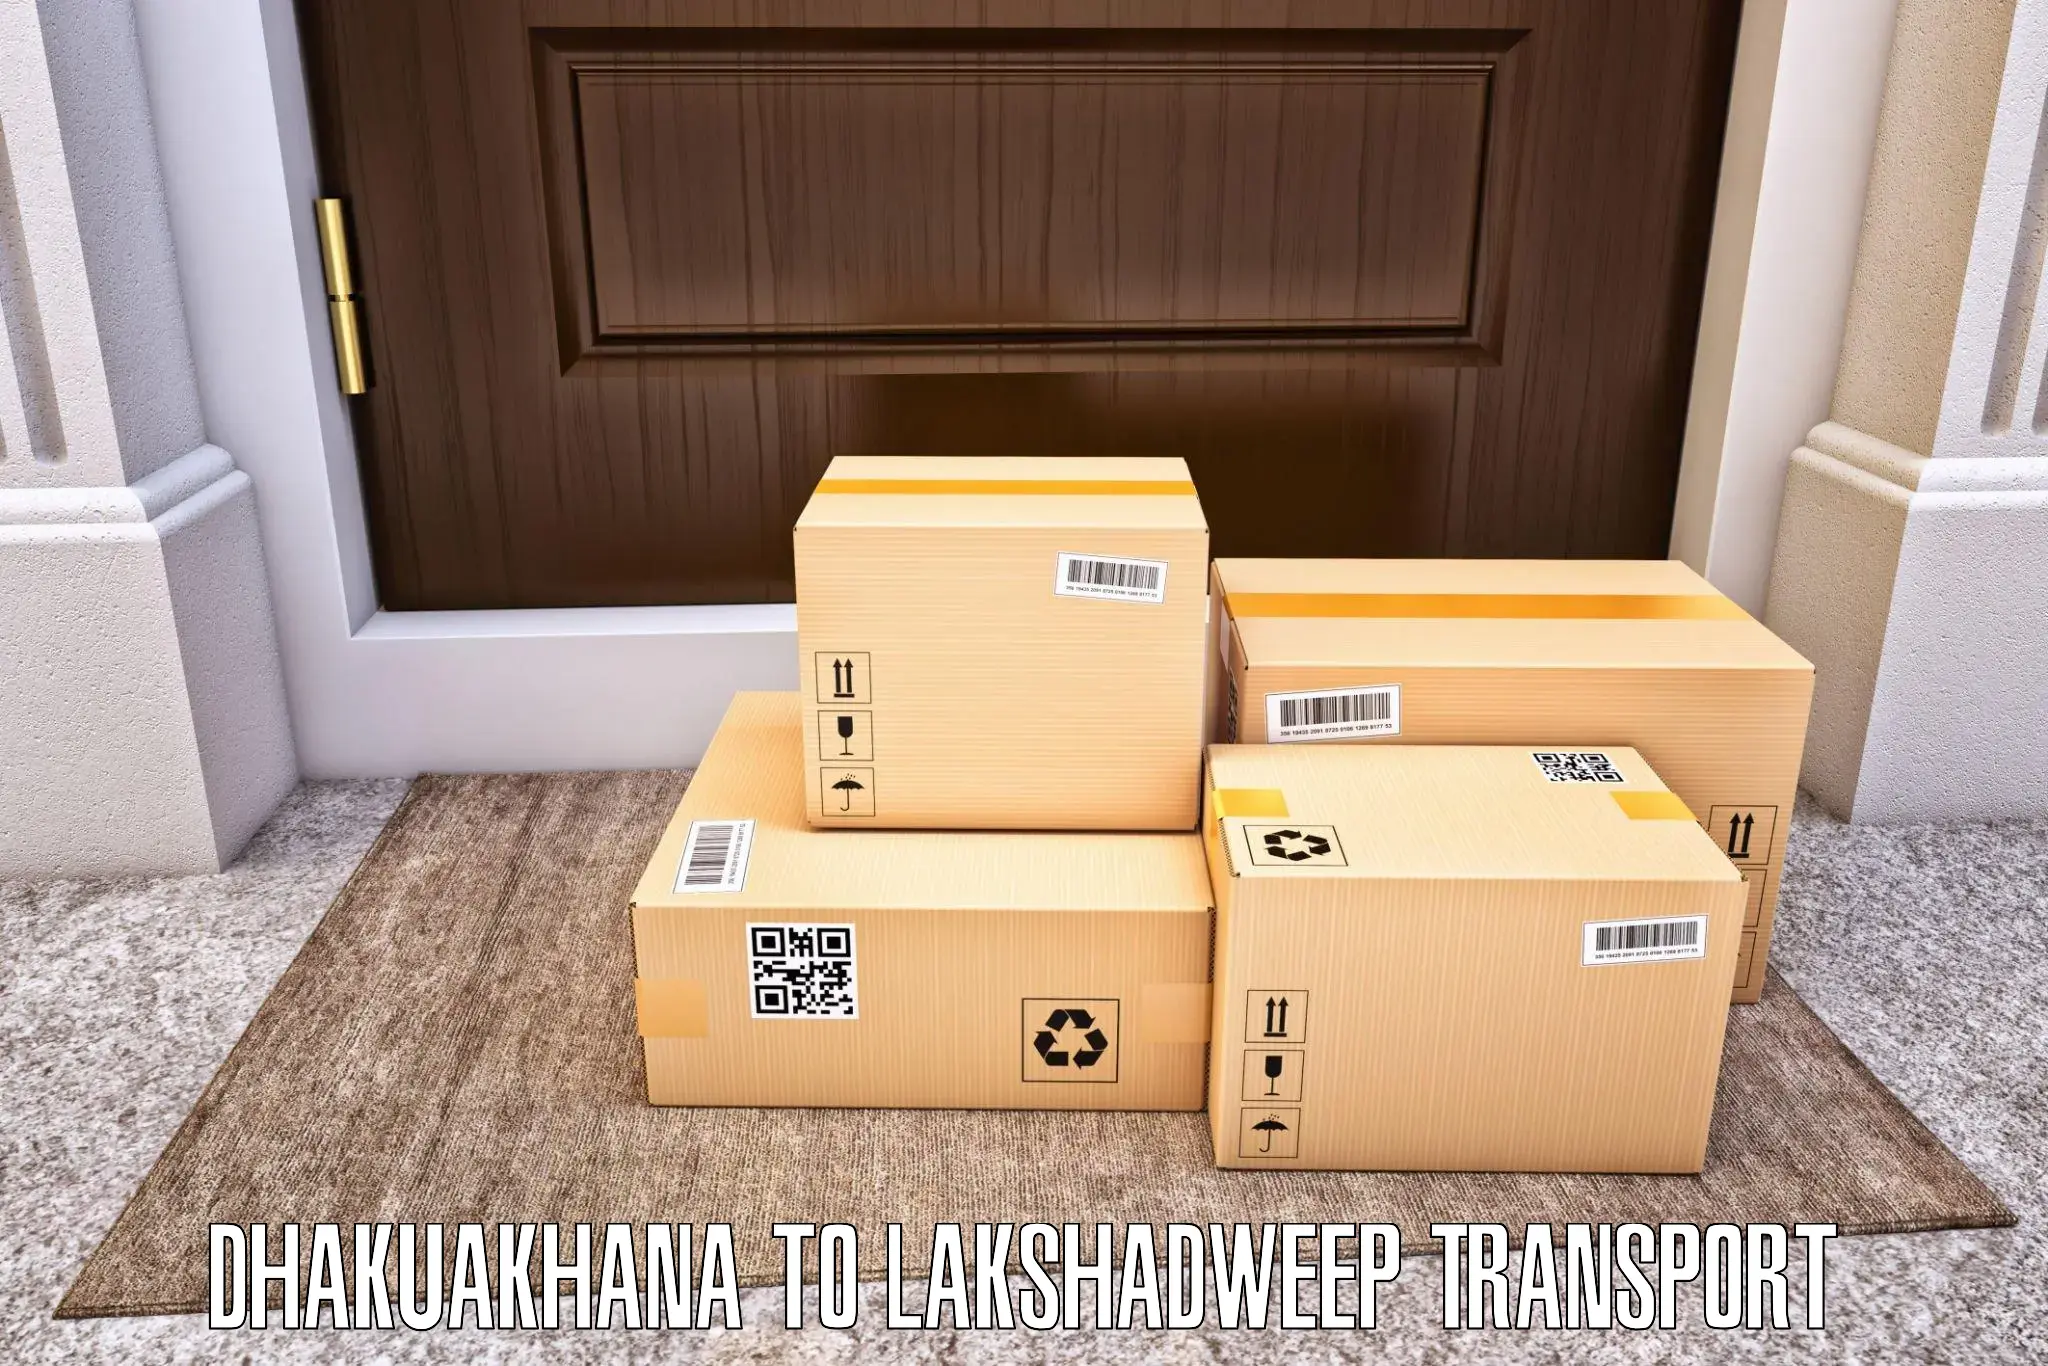 International cargo transportation services Dhakuakhana to Lakshadweep